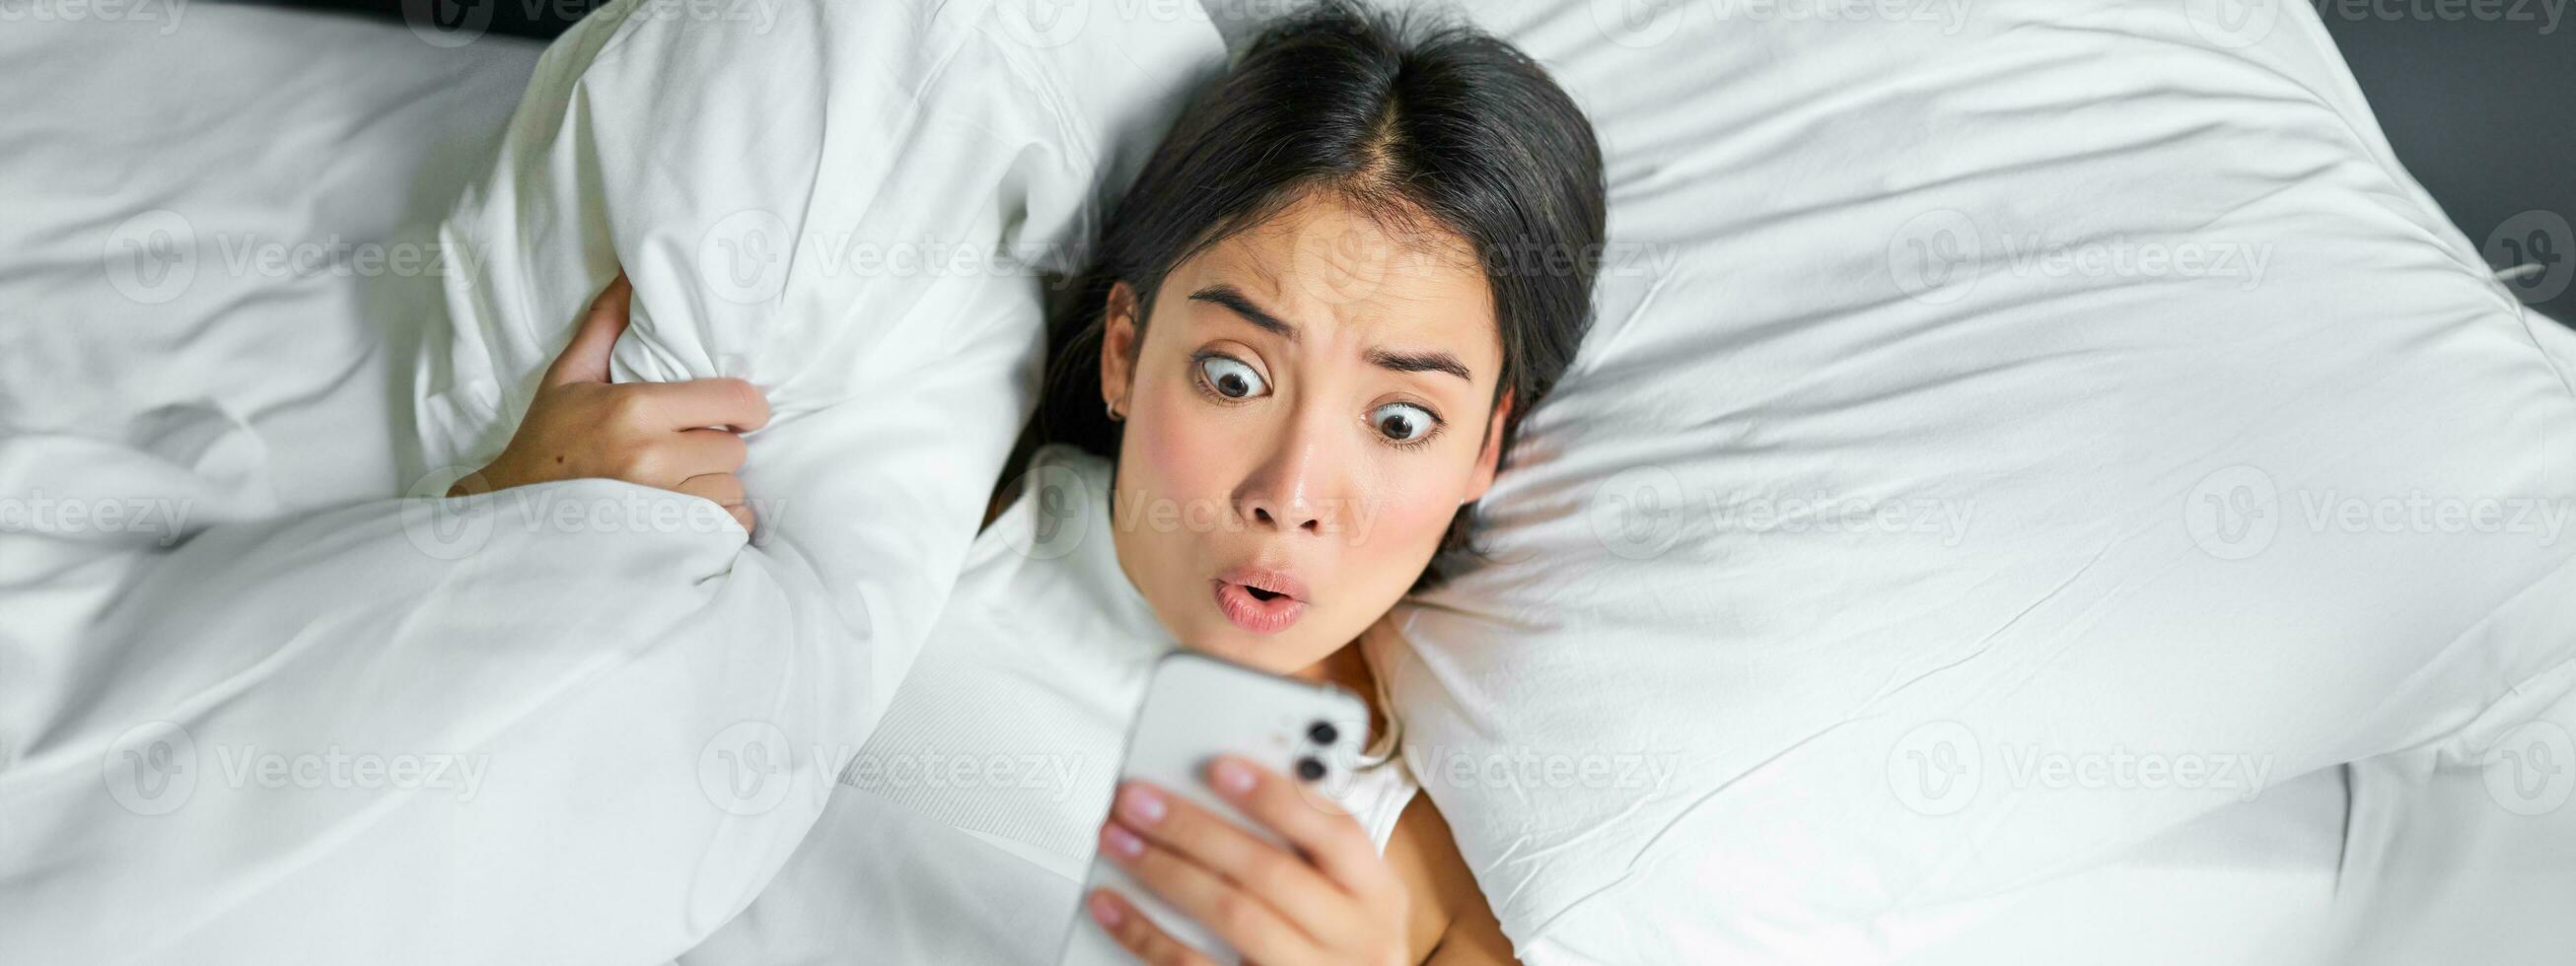 porträtt av asiatisk flicka vaknar upp i morgon, utseende på mobil telefon med chockade ansikte, försov sig, kramas kudde och grimaserande foto